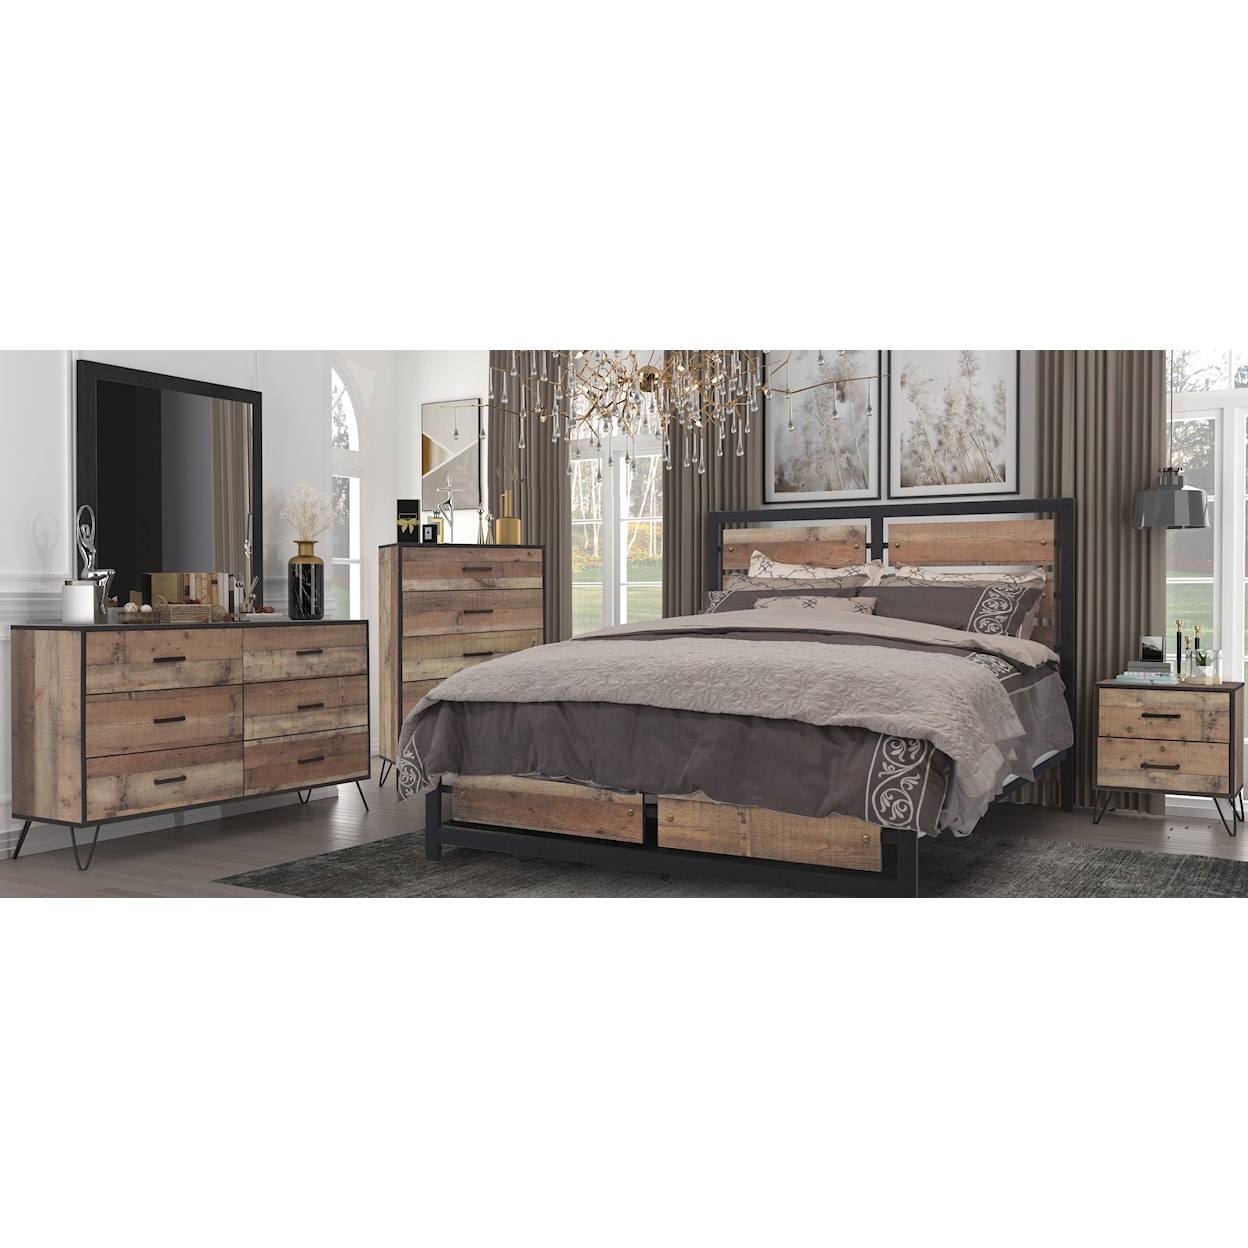 New Classic Furniture Elk River Bedroom Set